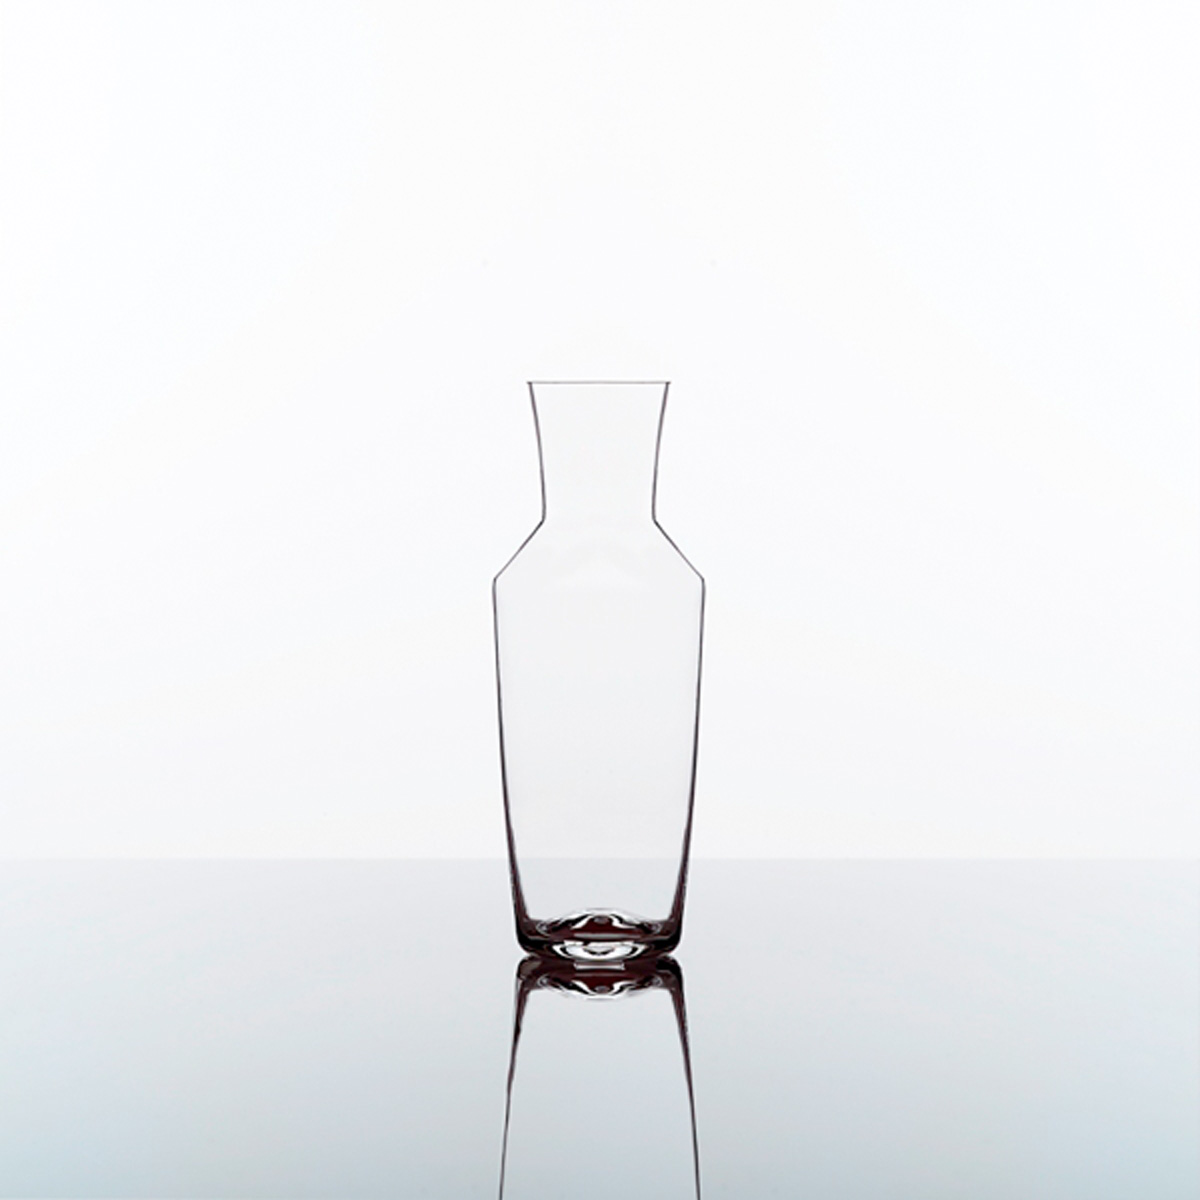 Zalto Denk'Art Karaffe Glas No 25 im Geschenkkarton